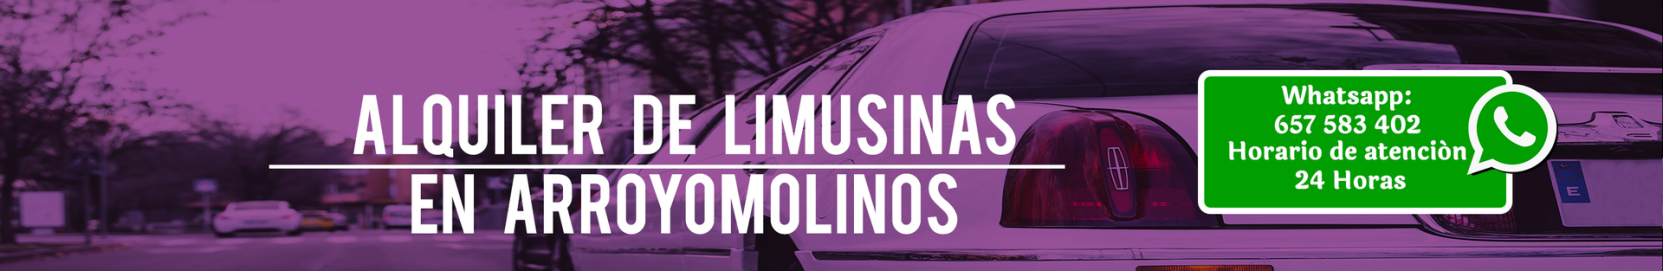 Alquiler de limusinas en Arroyomolinos